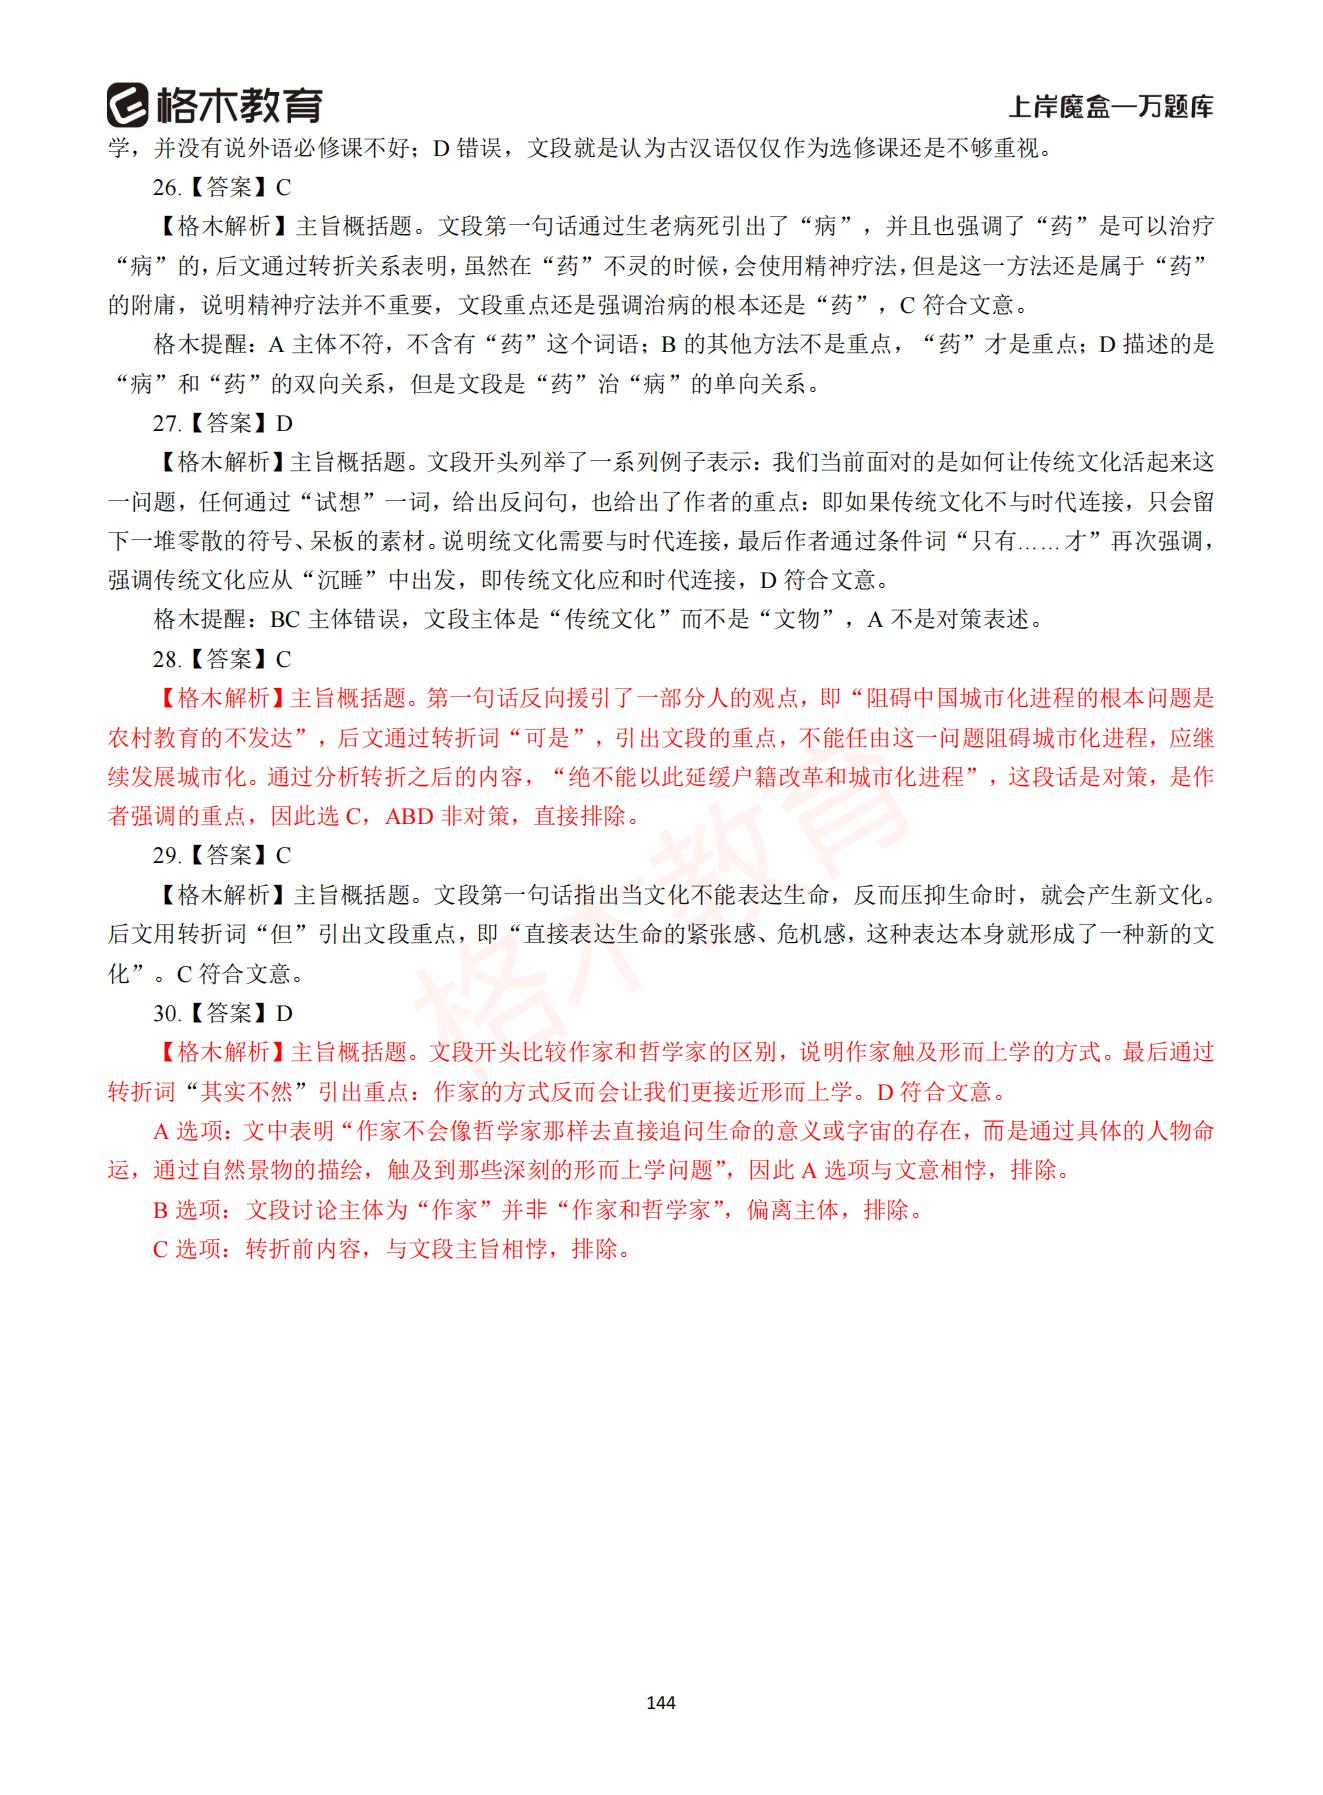 【下-言语+申论】-2021省考万题库题-解析_143.jpg